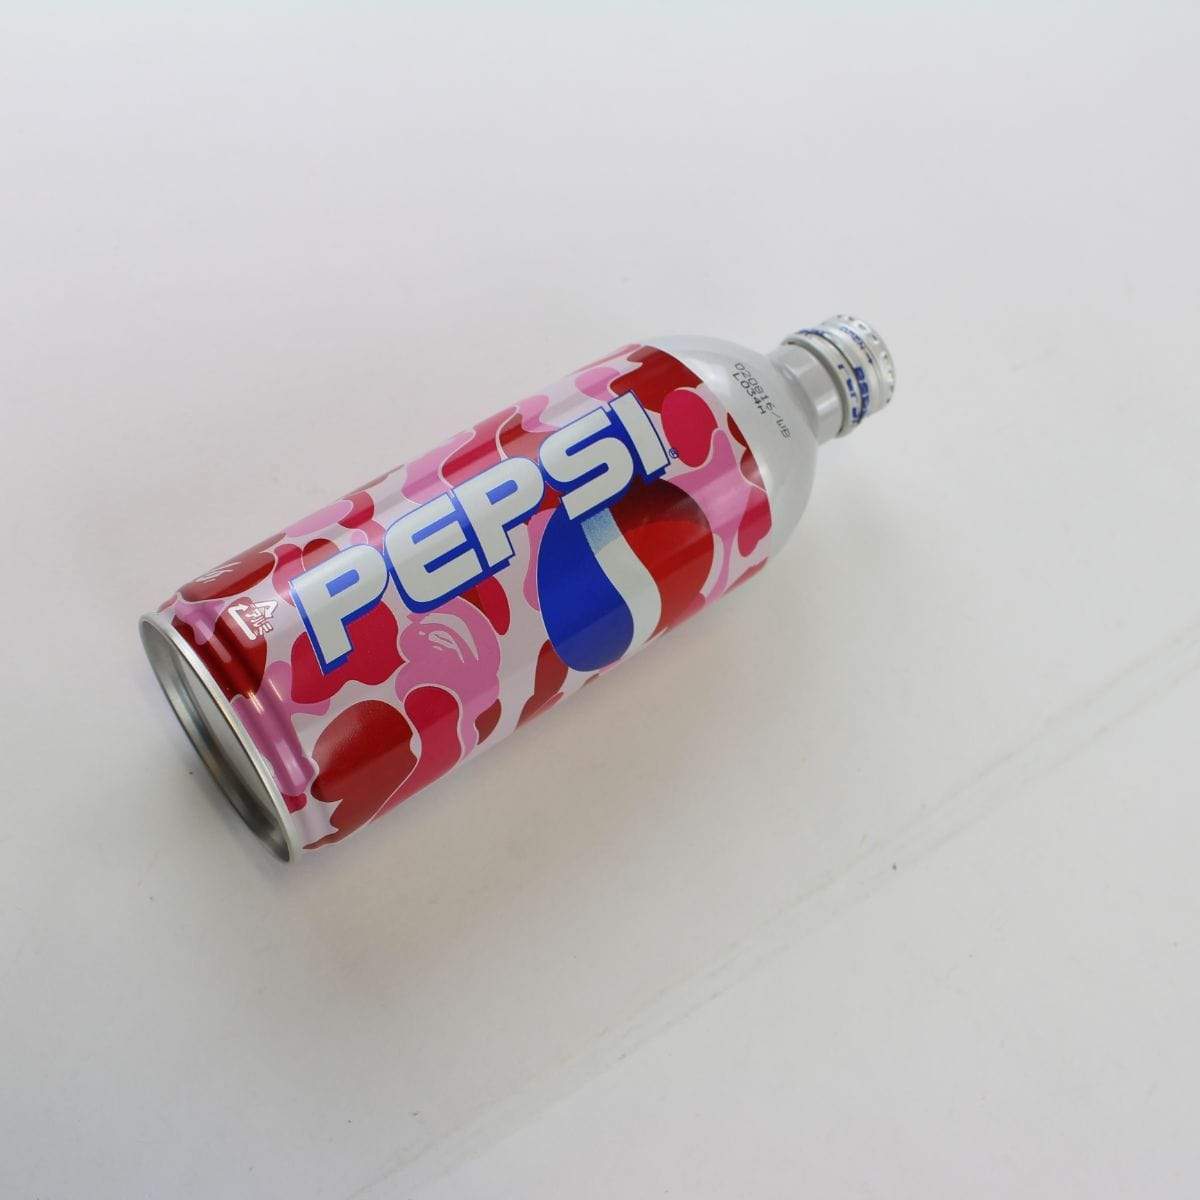 Bape X Pepsi Bottle - SaruGeneral